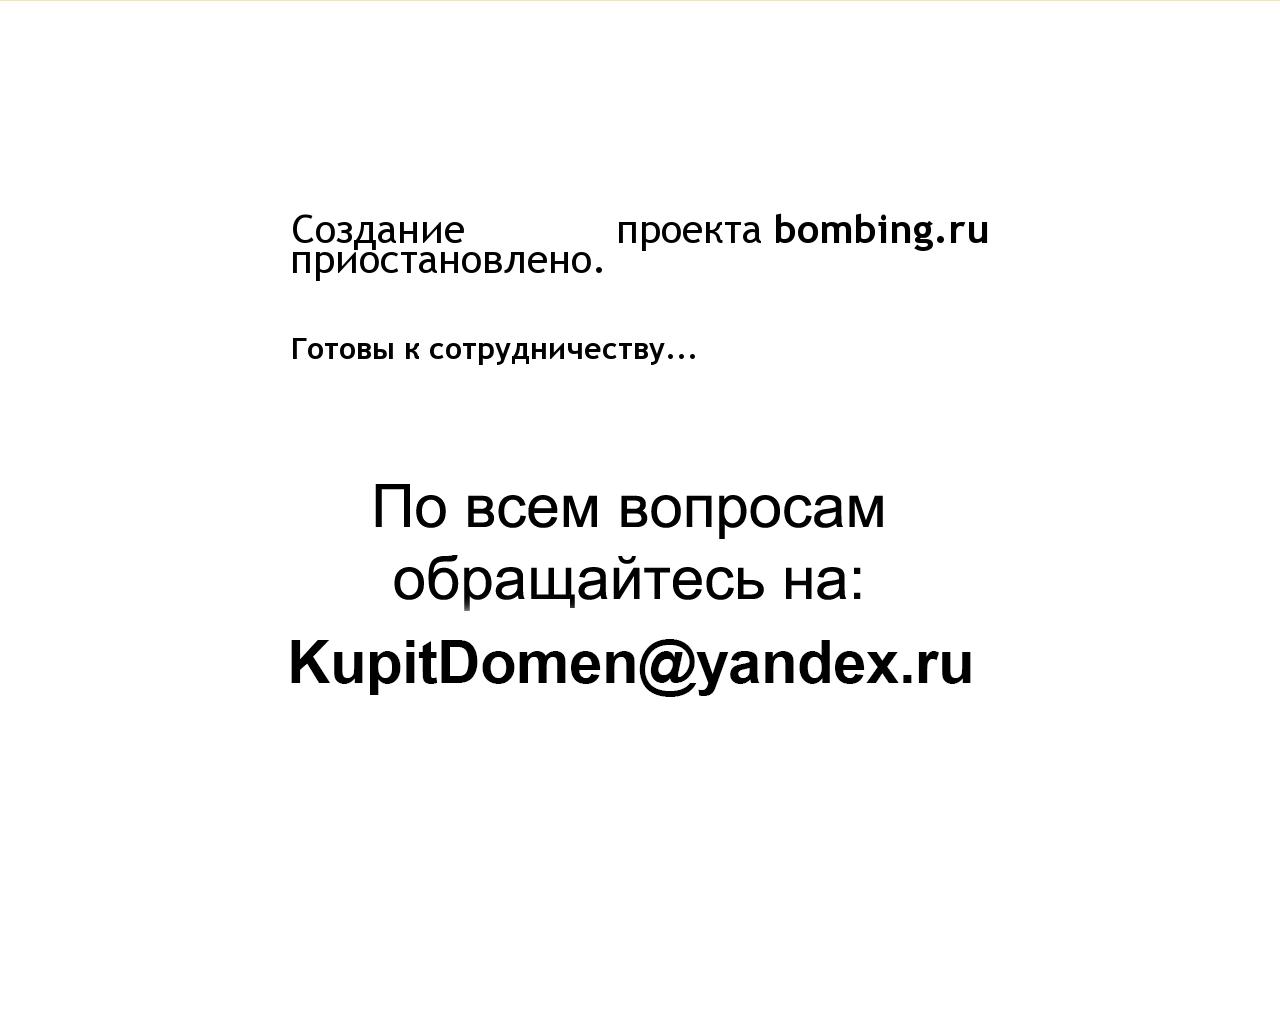 Изображение сайта bombing.ru в разрешении 1280x1024